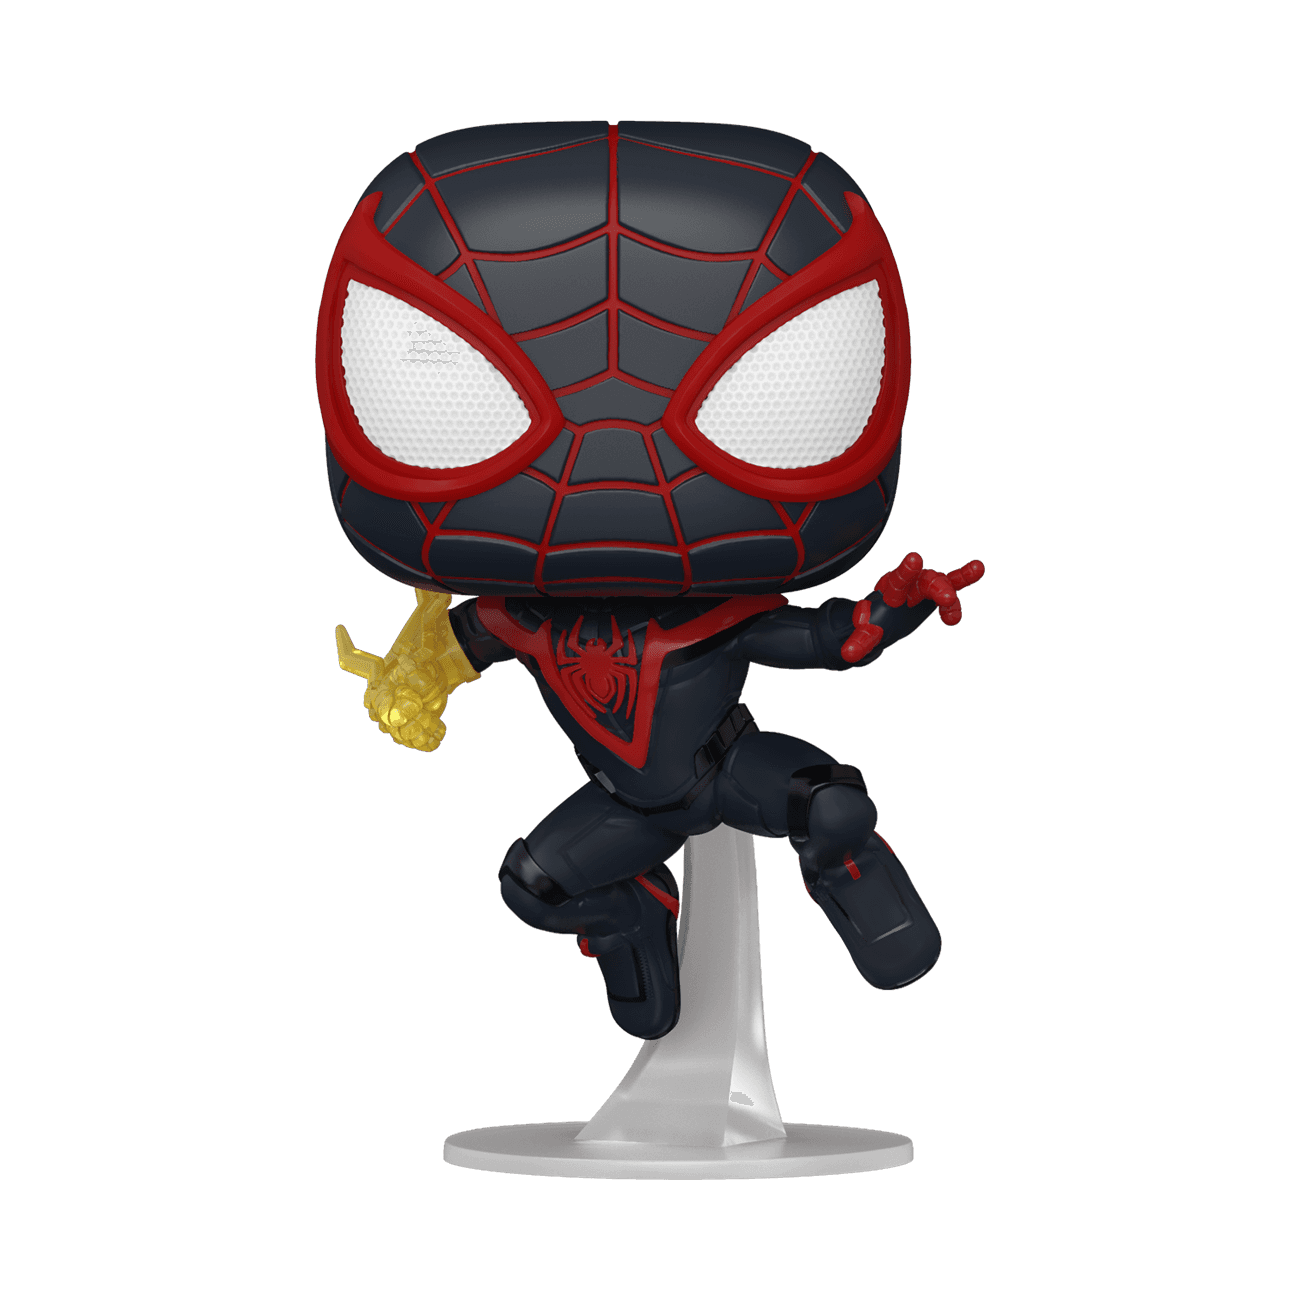 Details about   Marvel Spider-Man Pop Miles Morales T.R.A.C.K. Suit *NEW* Vinyl Figure